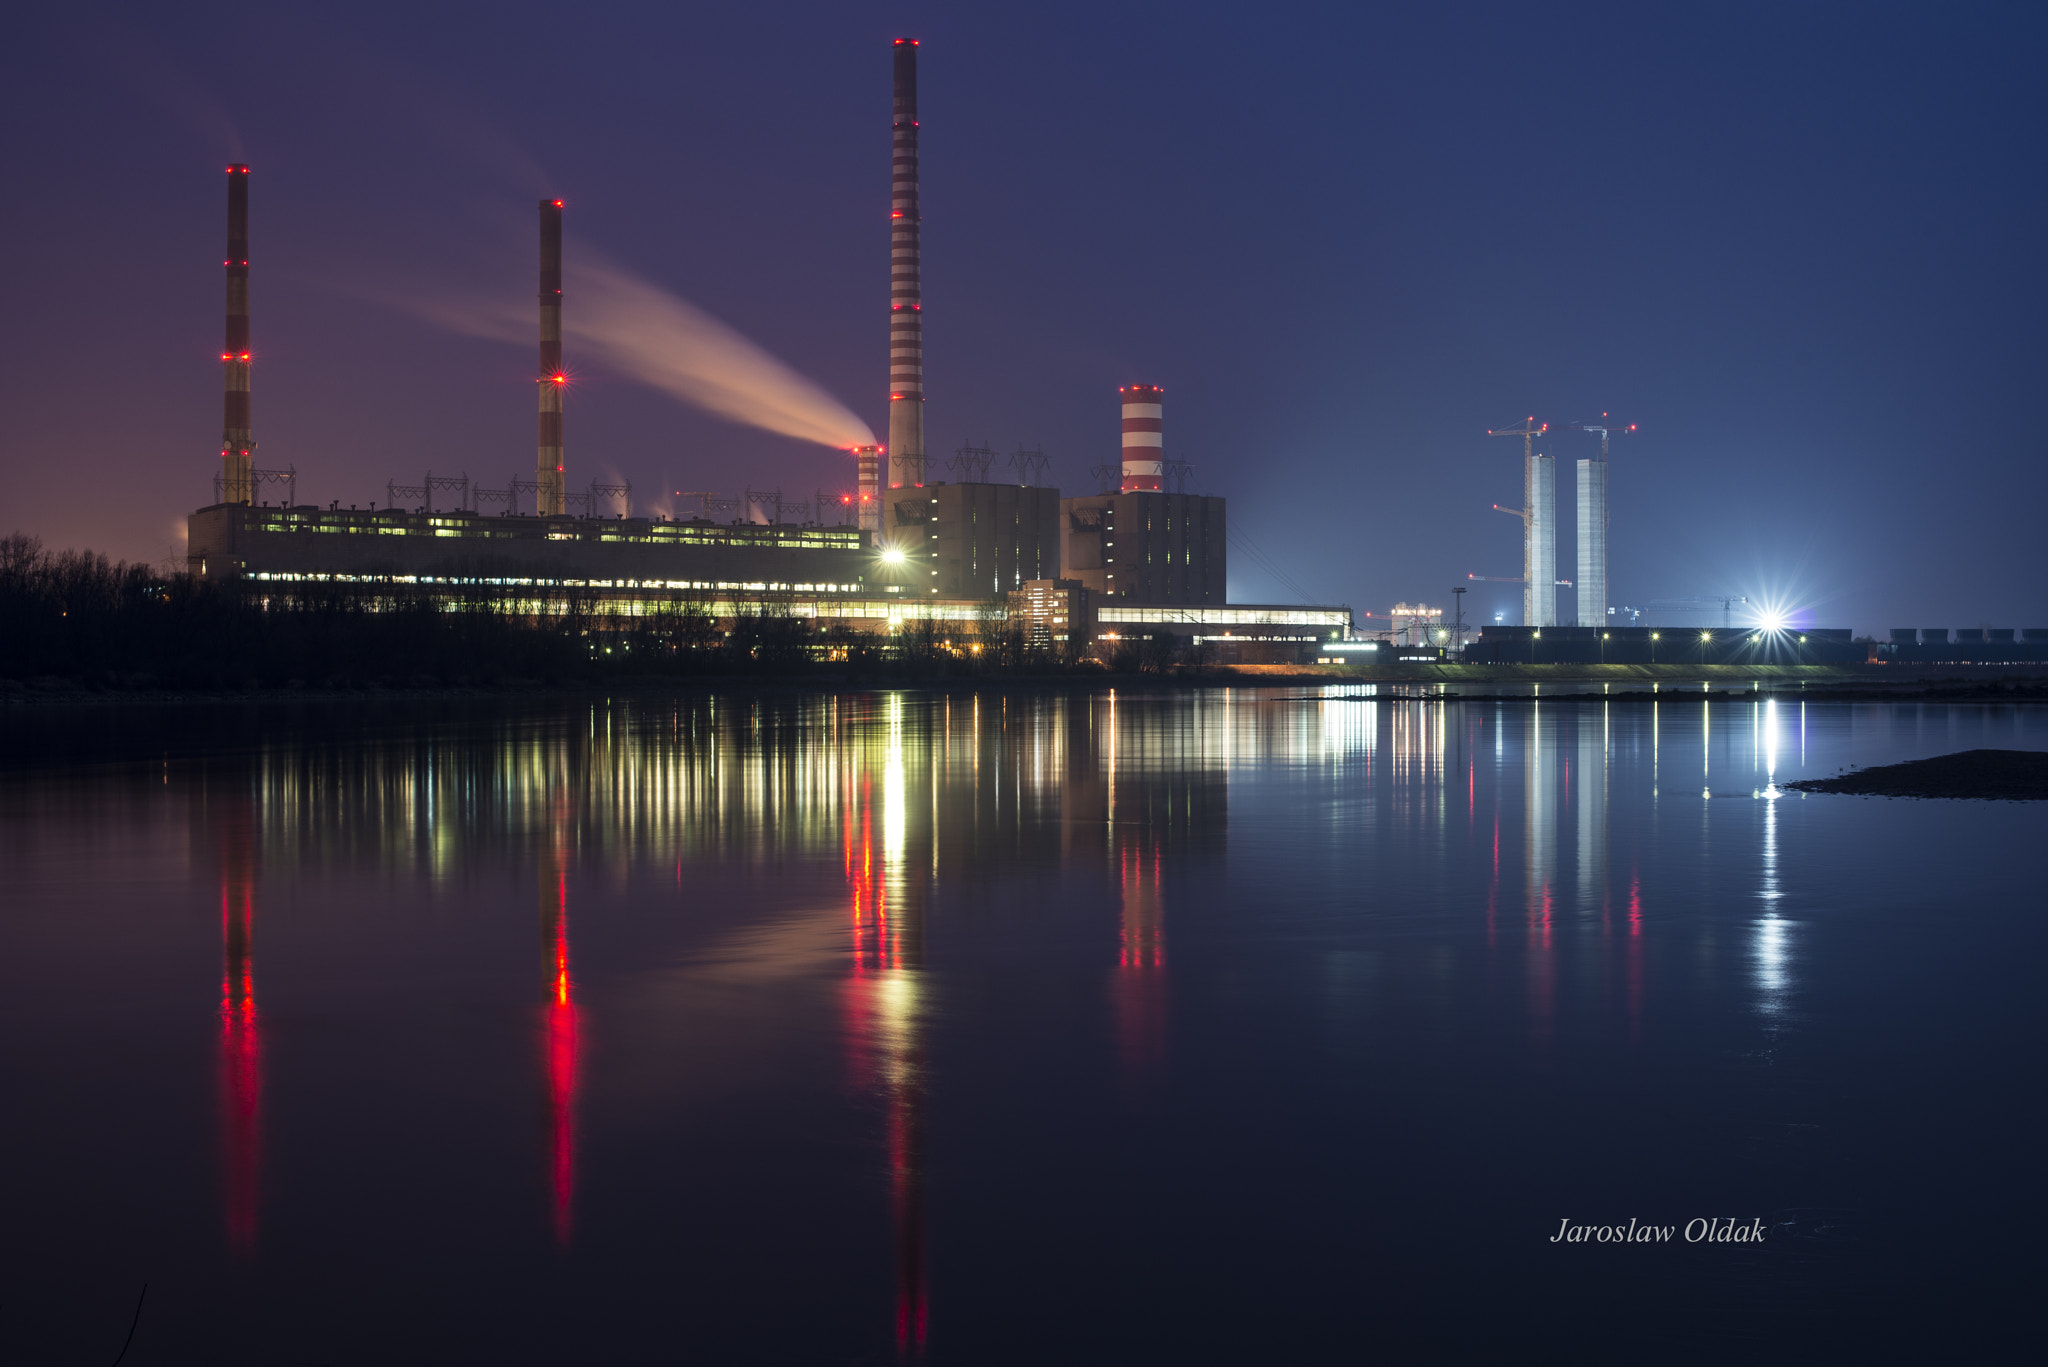 thermal-electric-power-station-kozienice-poland-by-jaros-aw-o-dak-500px